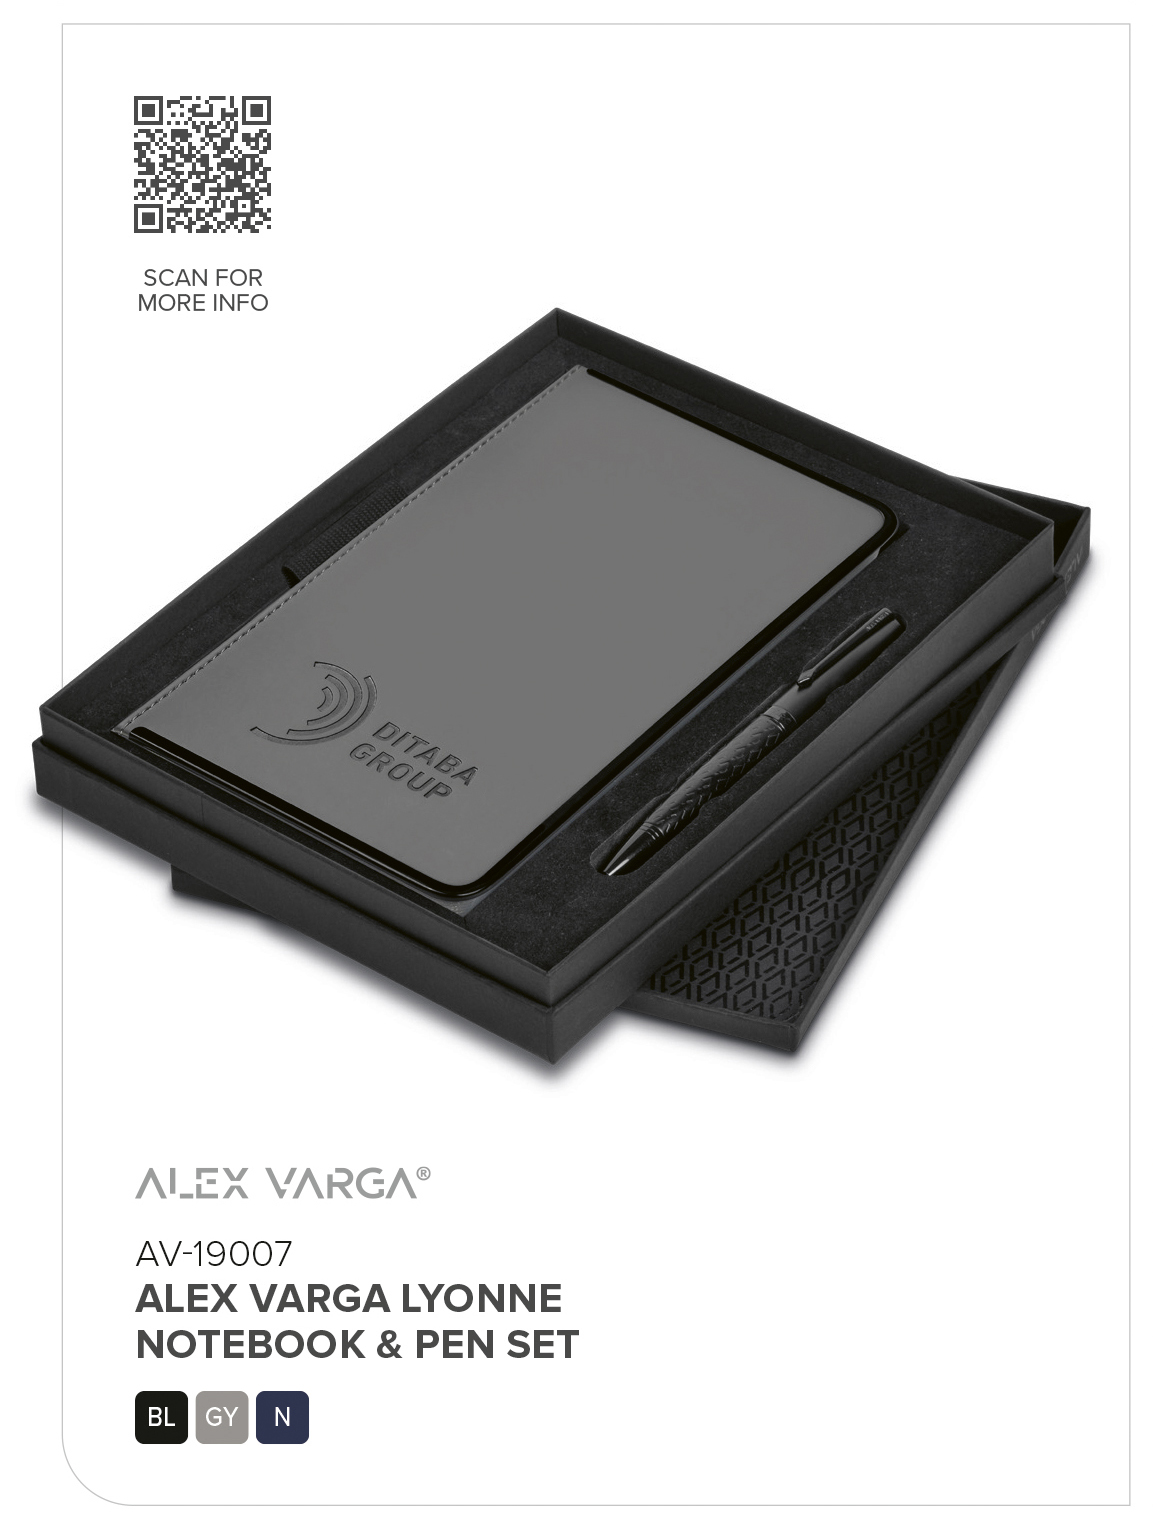 AV-19007 - Alex Varga Lyonne Notebook & Pen Set - Catalogue Image